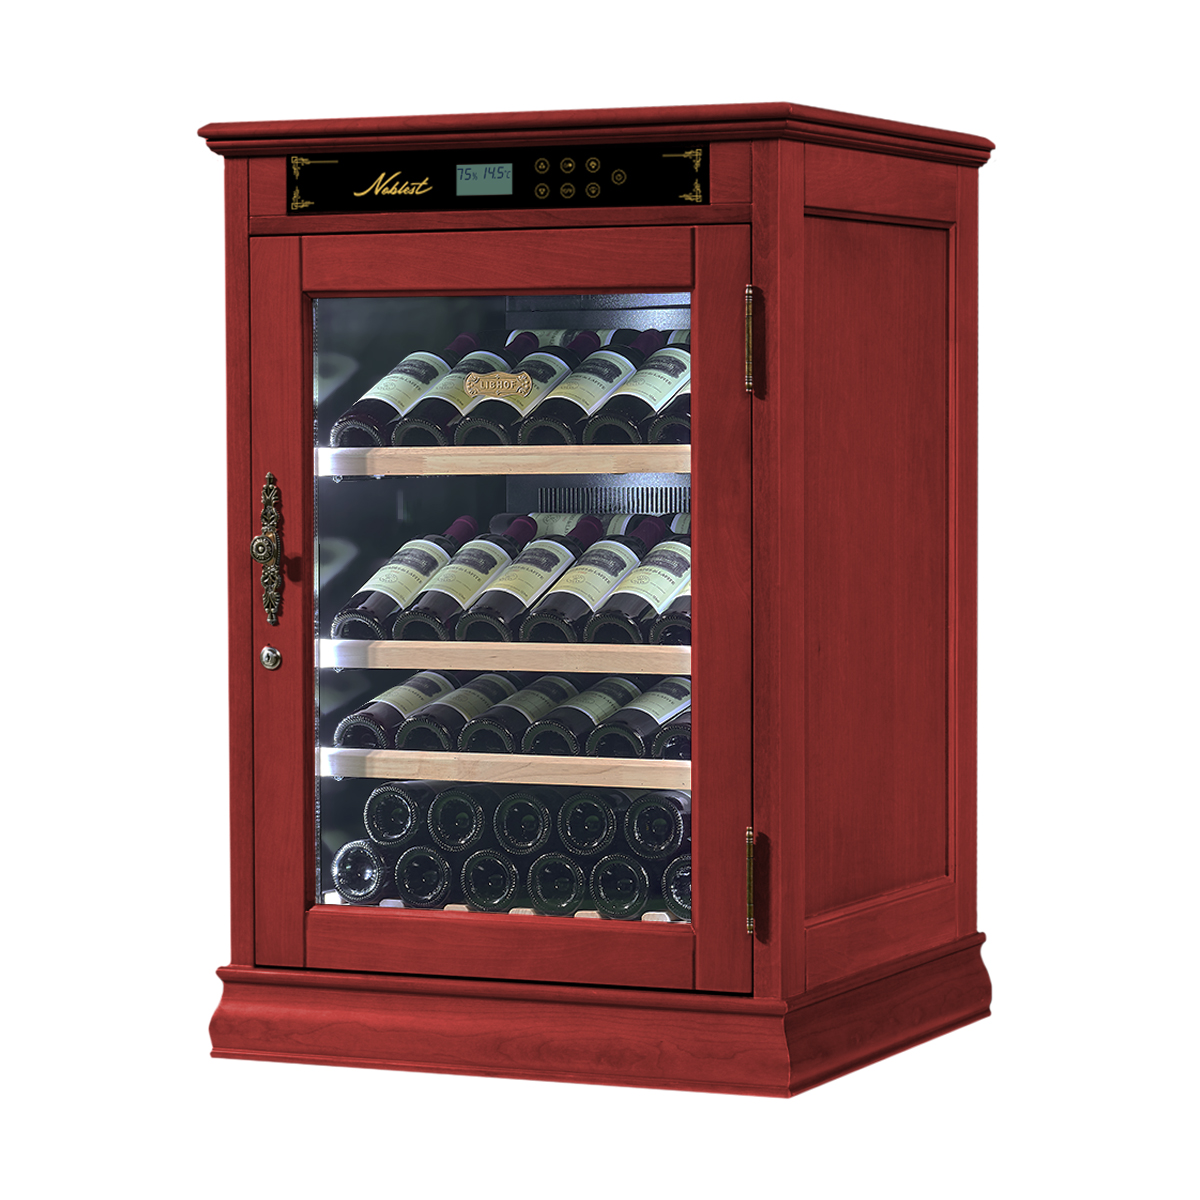 Винный шкаф однозонный отдельностоящий Libhof Noblest NR-43 Red Wine 700х650х1030мм на 43 бутылки из американского дуба 